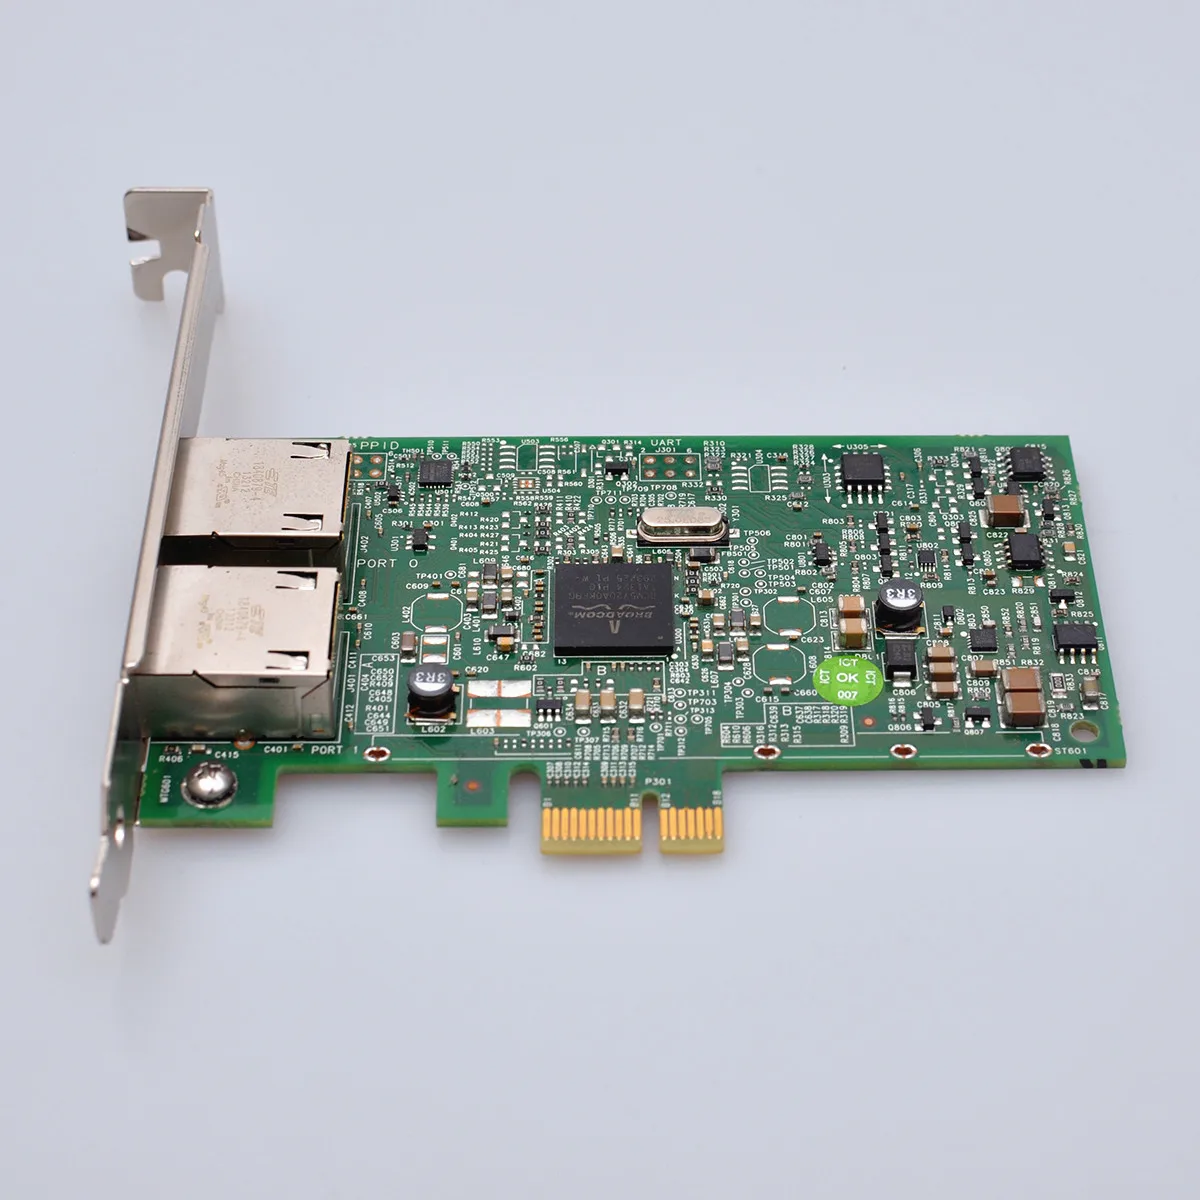 מקורי Broadcom 5720 BCM5720 557M9 כפול 2 יציאת רשת Gigabit באינטרנט כרטיס PCI-E X1 עבור Dell גרסה 00FCGN 0FCGN - 1